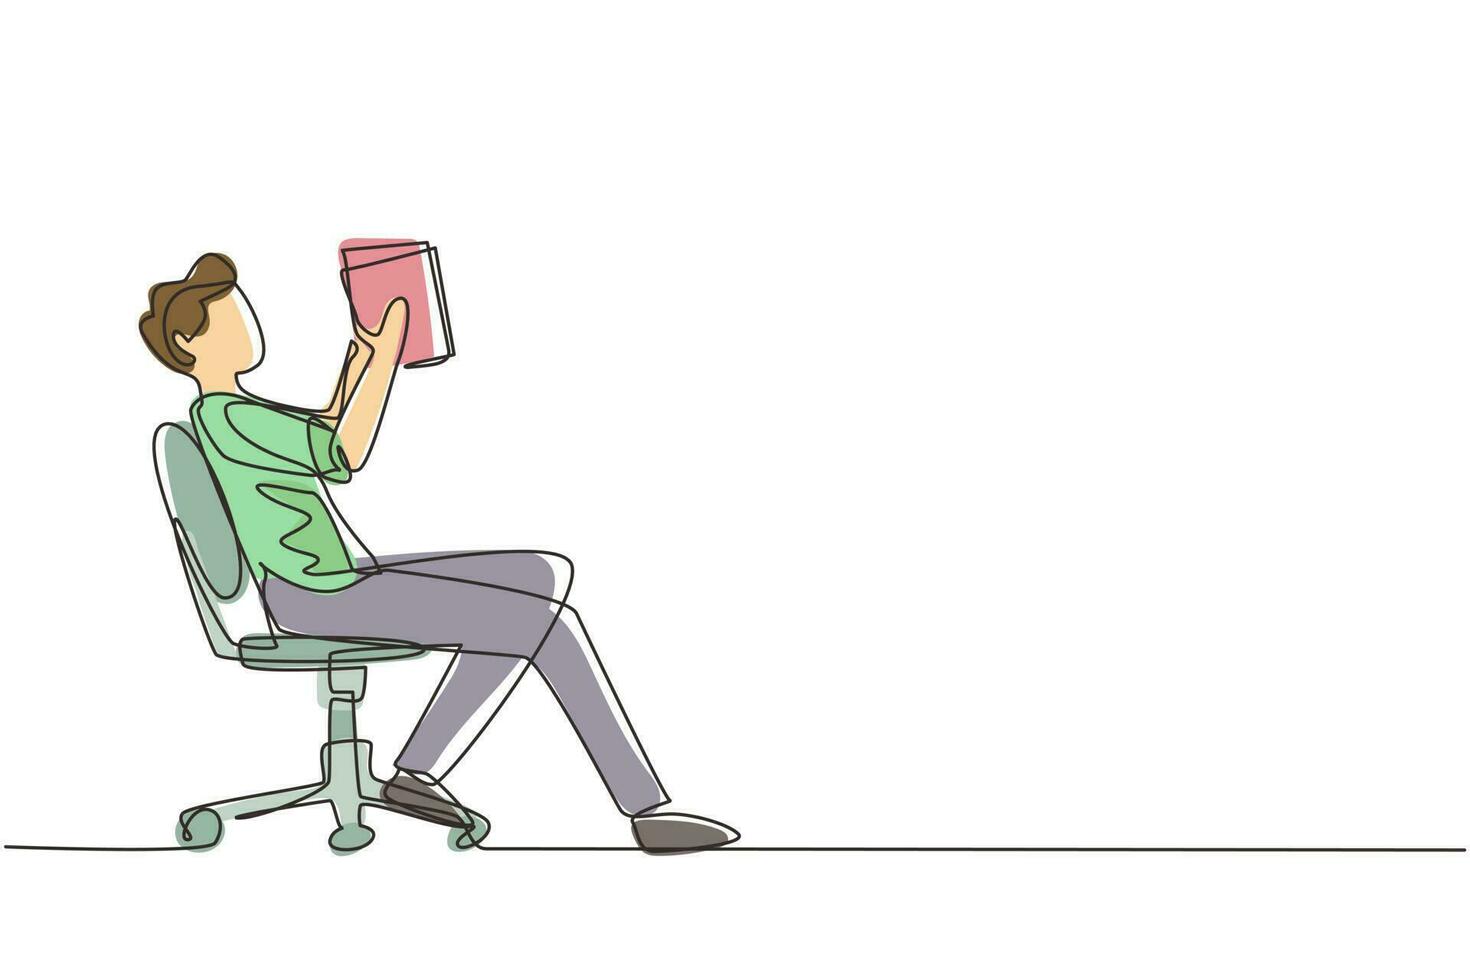 dessin en ligne continue garçon lit un livre sur une chaise. vue latérale du processus d'apprentissage sortant par le jeune homme. style de garçon passant son temps libre en lisant de la littérature. vecteur de conception de dessin d'une ligne